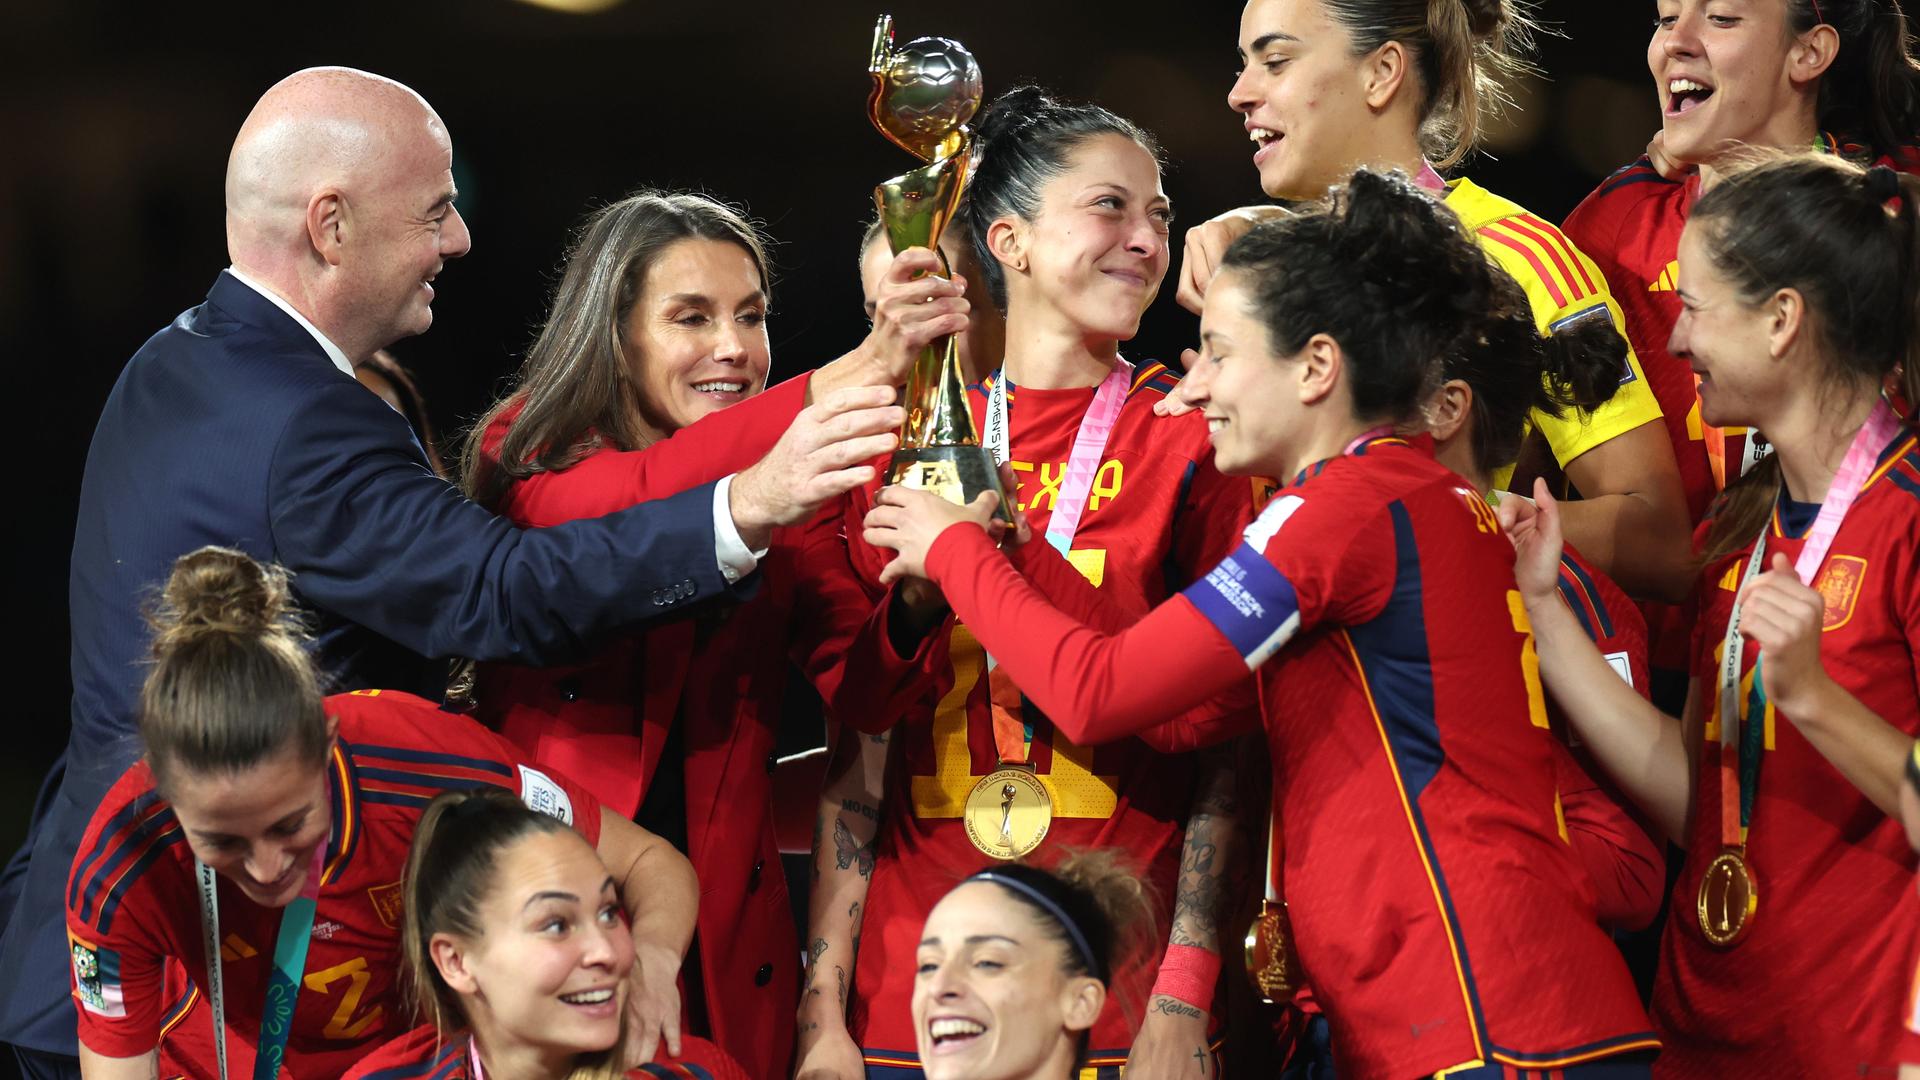 Die Spielerinnen aus dem Land Spanien halten den Pokal.